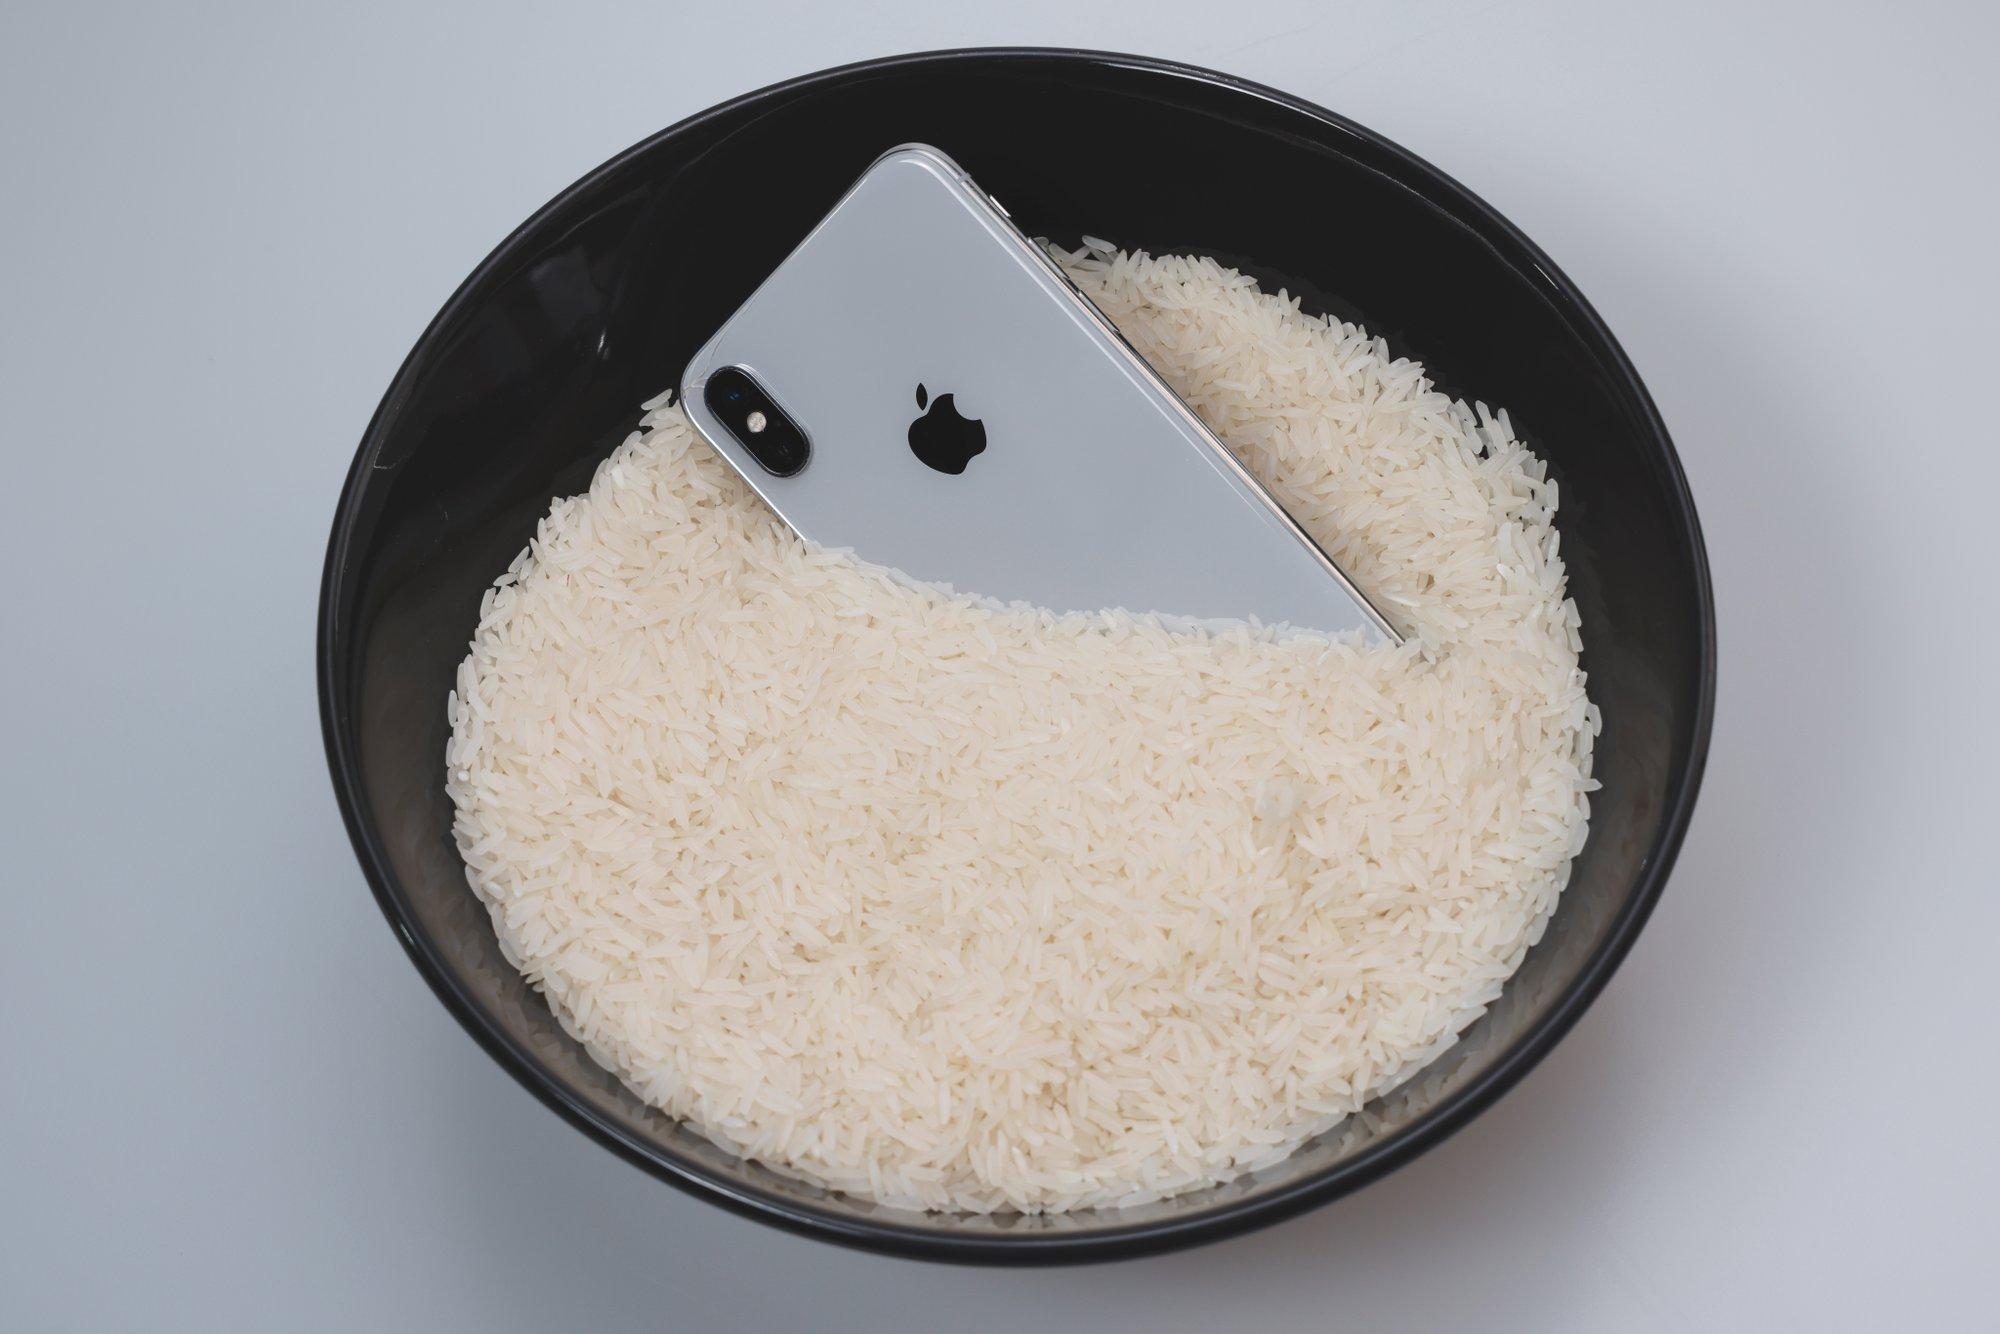 „Apple“ perspėja: jei sušlapo jūsų telefonas, nedžiovinkite jo ryžiuose – yra geresnis būdas